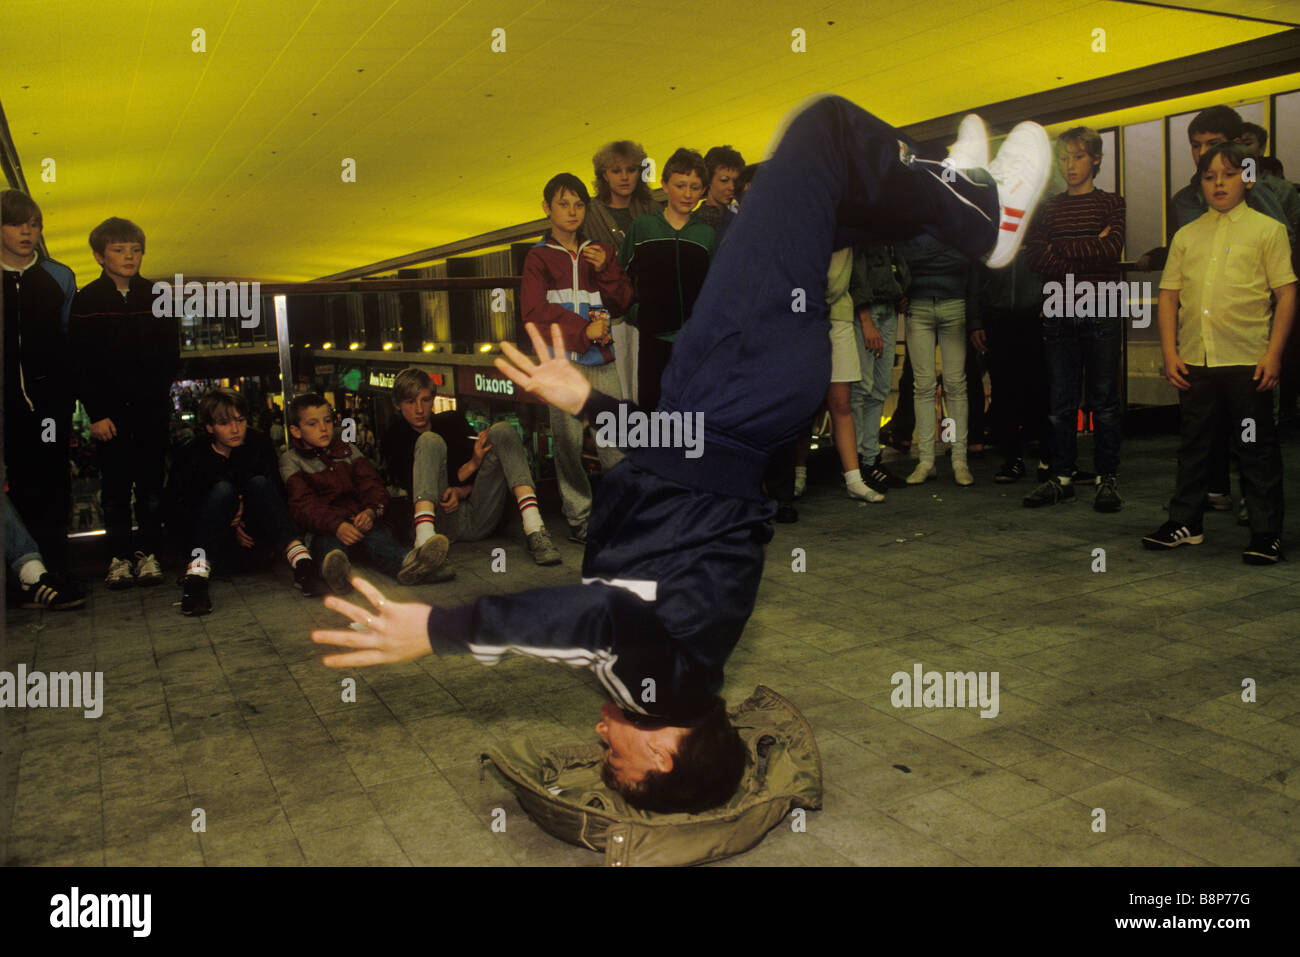 Adolescenti breakdance anni '1980 in un centro commerciale Stockport Lancashire Inghilterra circa 1985 UK HOMER SYKES Foto Stock